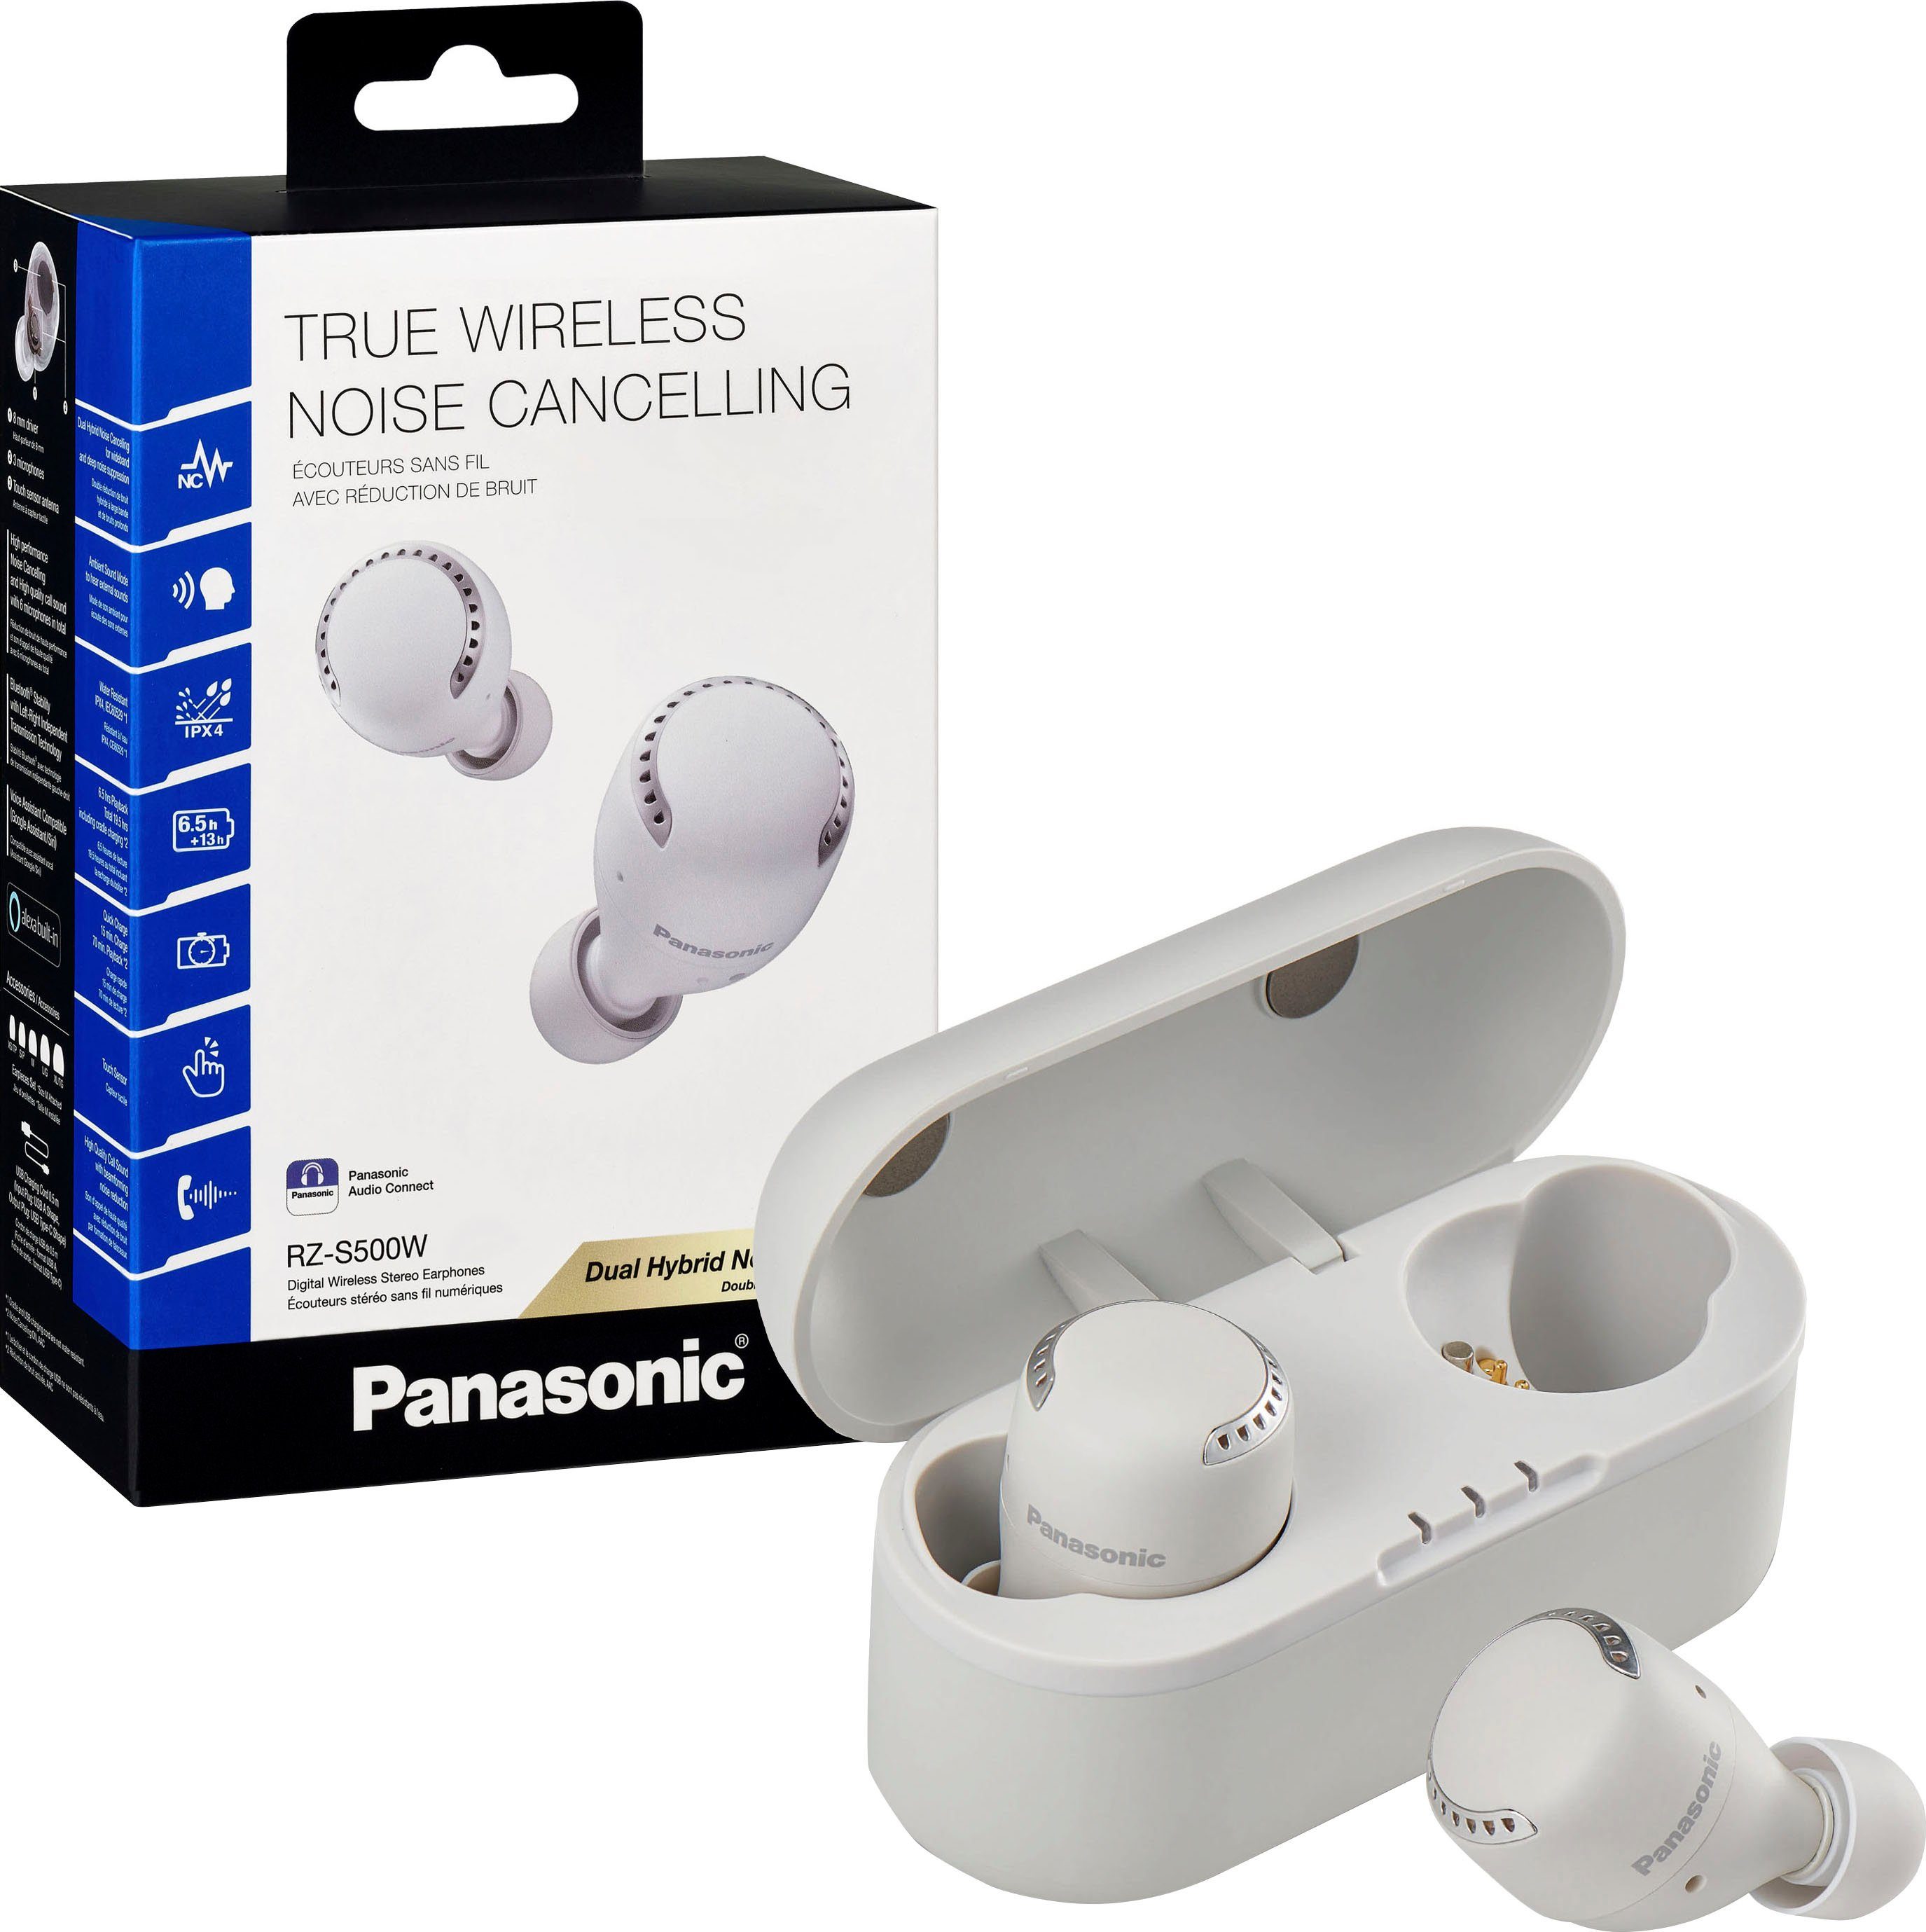 (Noise-Cancelling, Sprachsteuerung, Wireless, Panasonic True weiß Bluetooth) RZ-S500WE wireless In-Ear-Kopfhörer